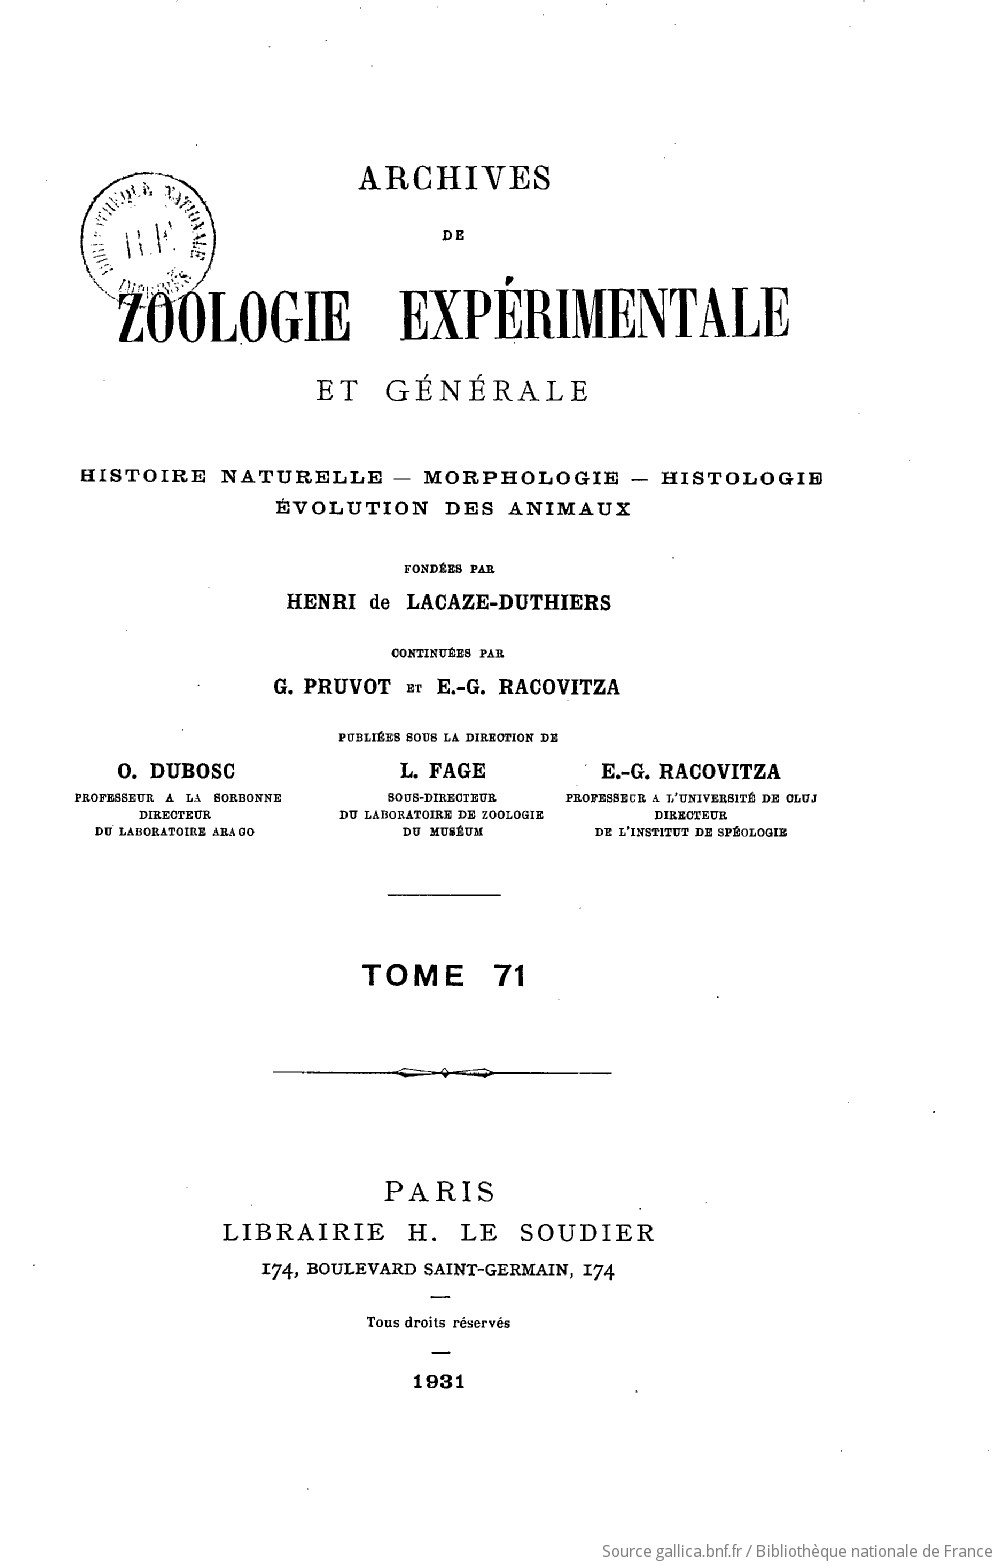 Archives de zoologie expérimentale et générale : histoire naturelle, morphologie, histologie, évolution des animaux...